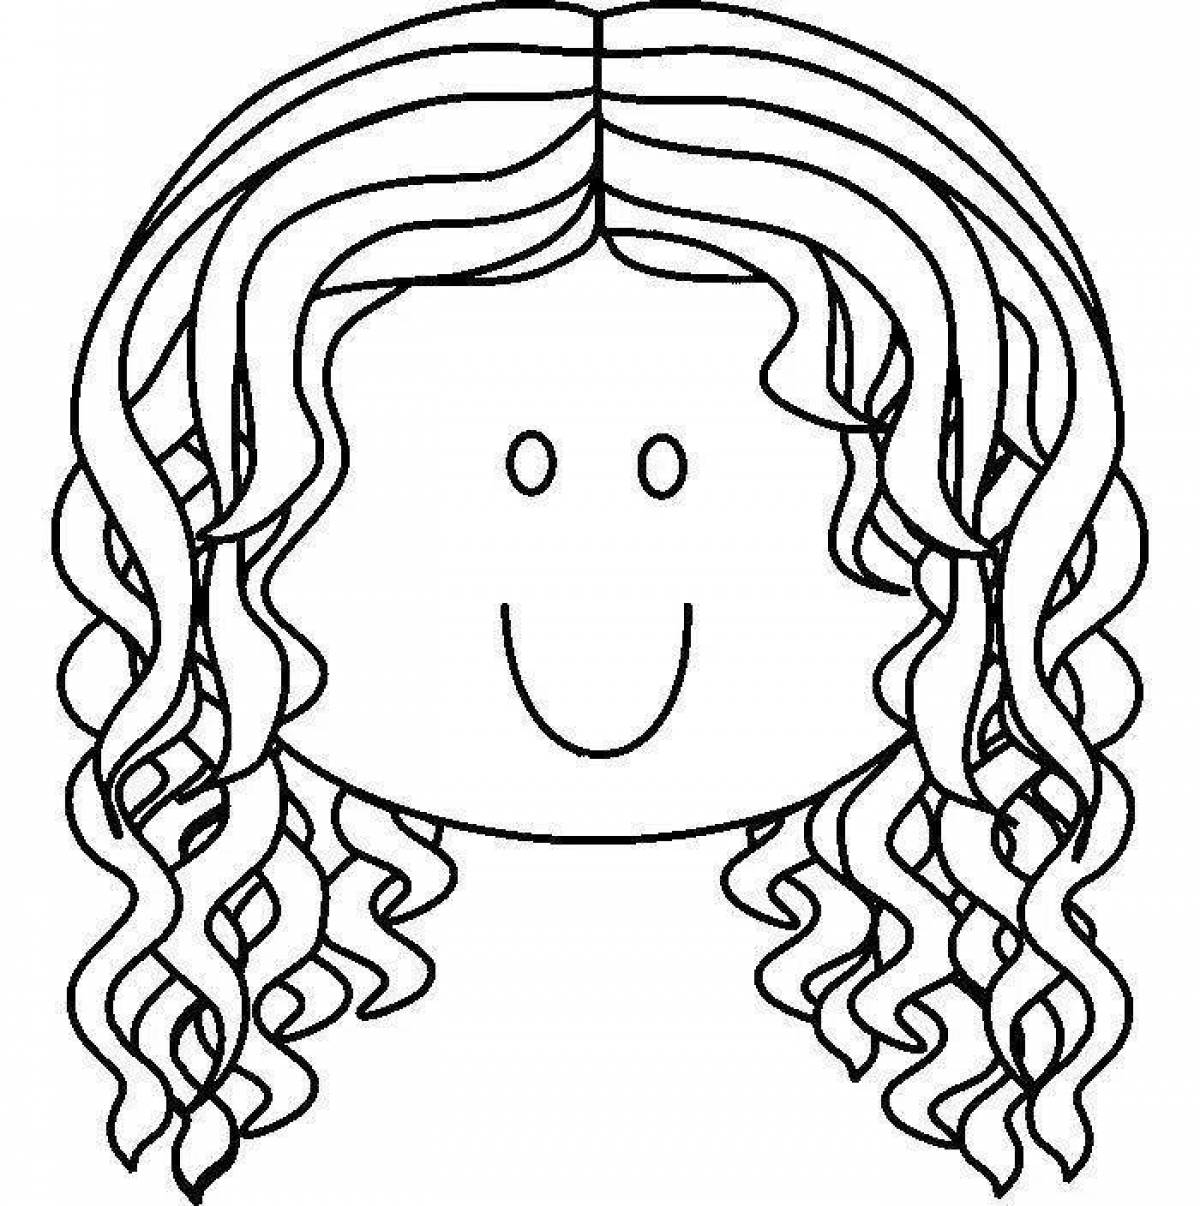 Joyful human face coloring book for kids